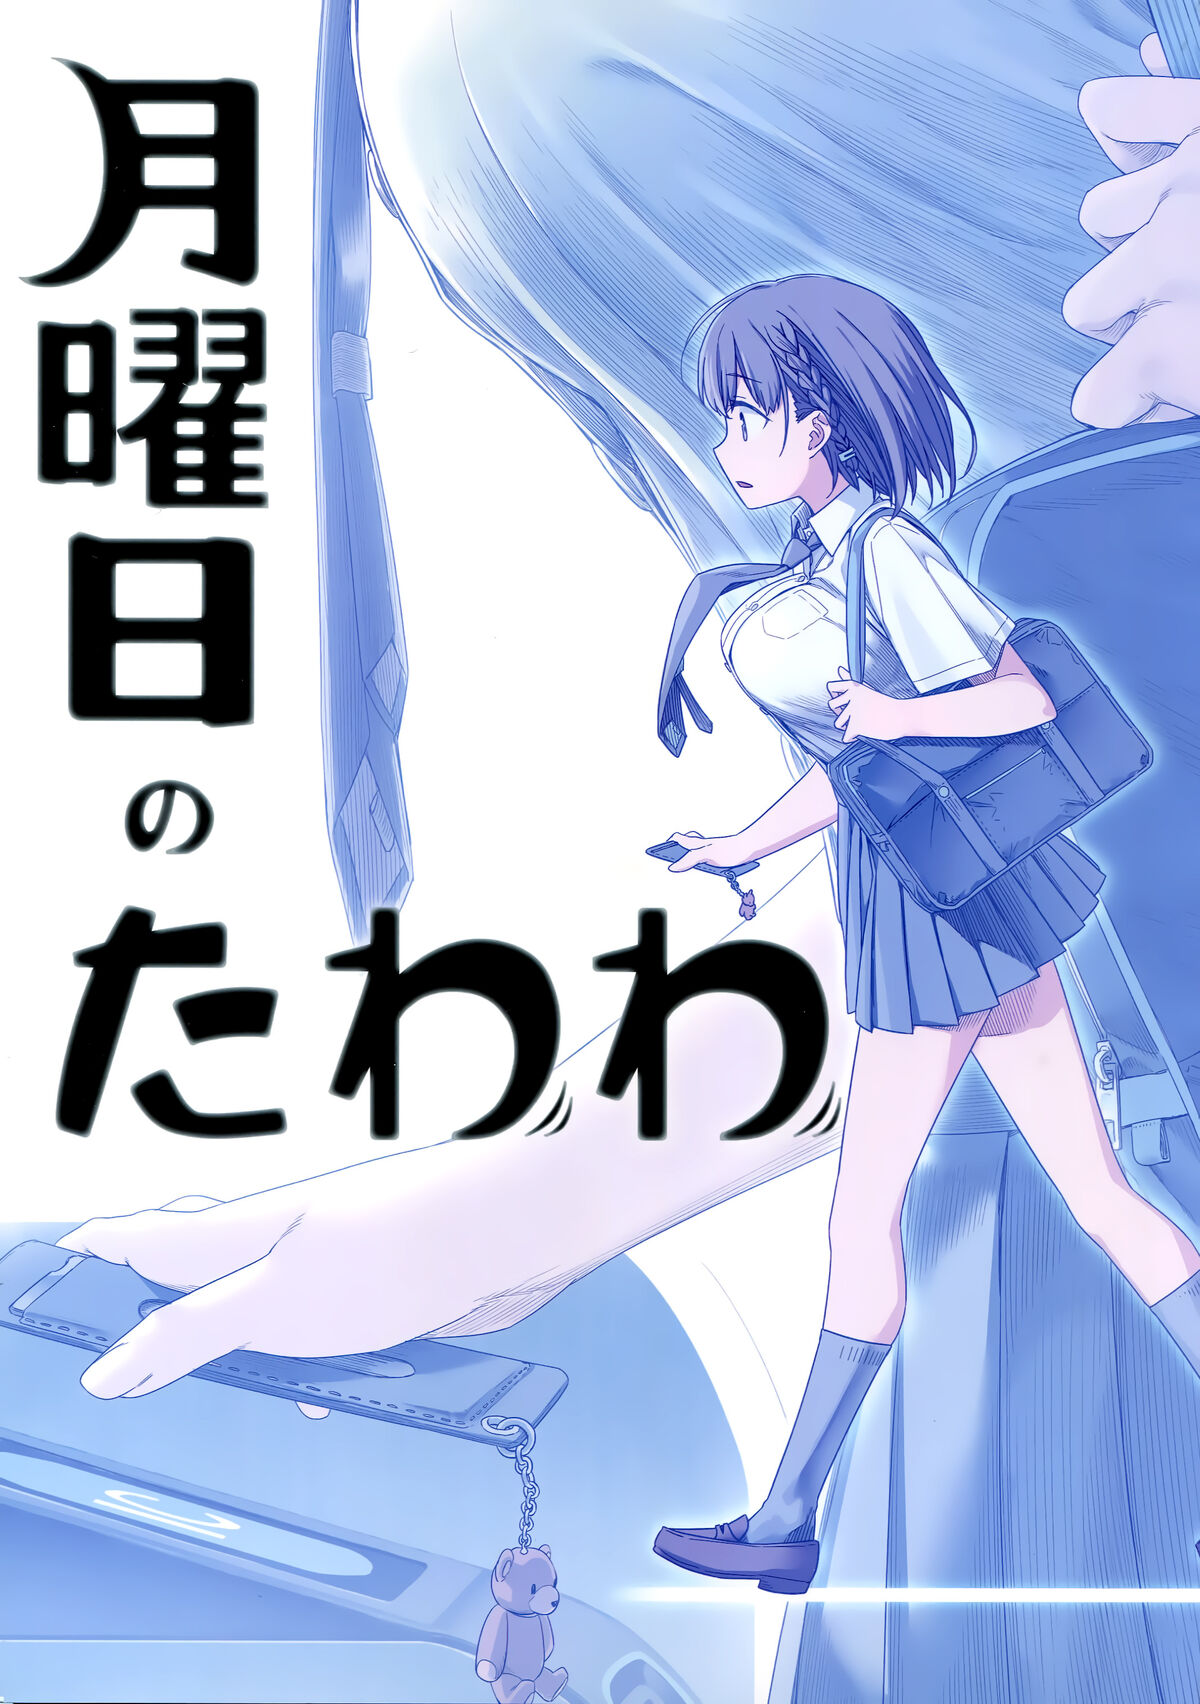 DISC] Getsuyobi no Tawawa ch. 374: Tawawa in Another World Part 2 (Augh!  What Giant Magical Power!) : r/manga